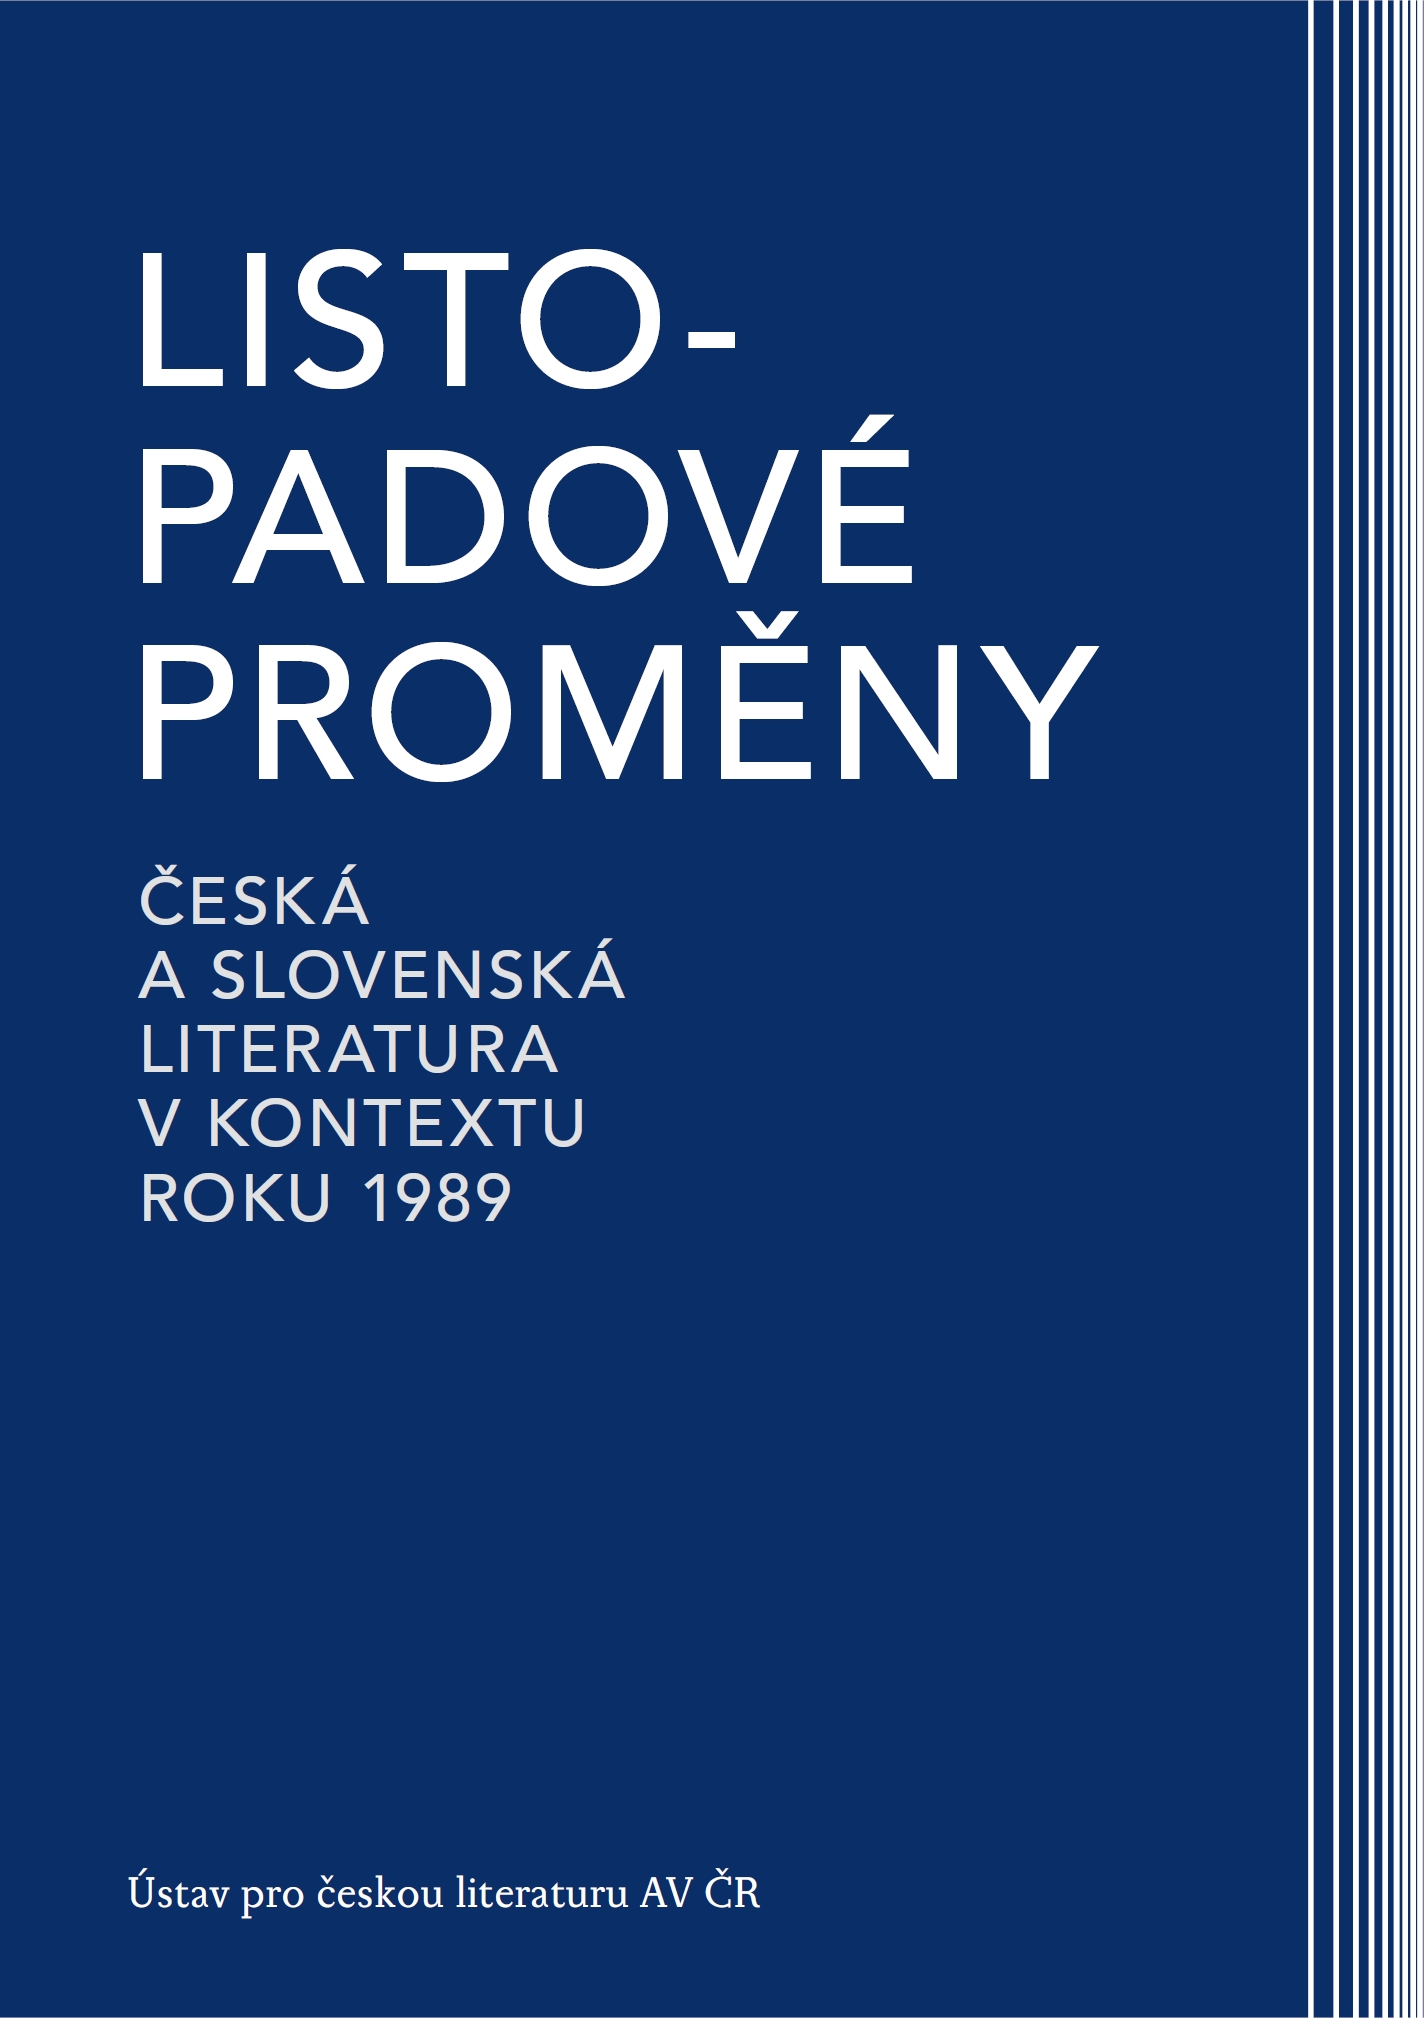 Listopadové proměny: Česká a slovenská literatura v kontextu roku 1989